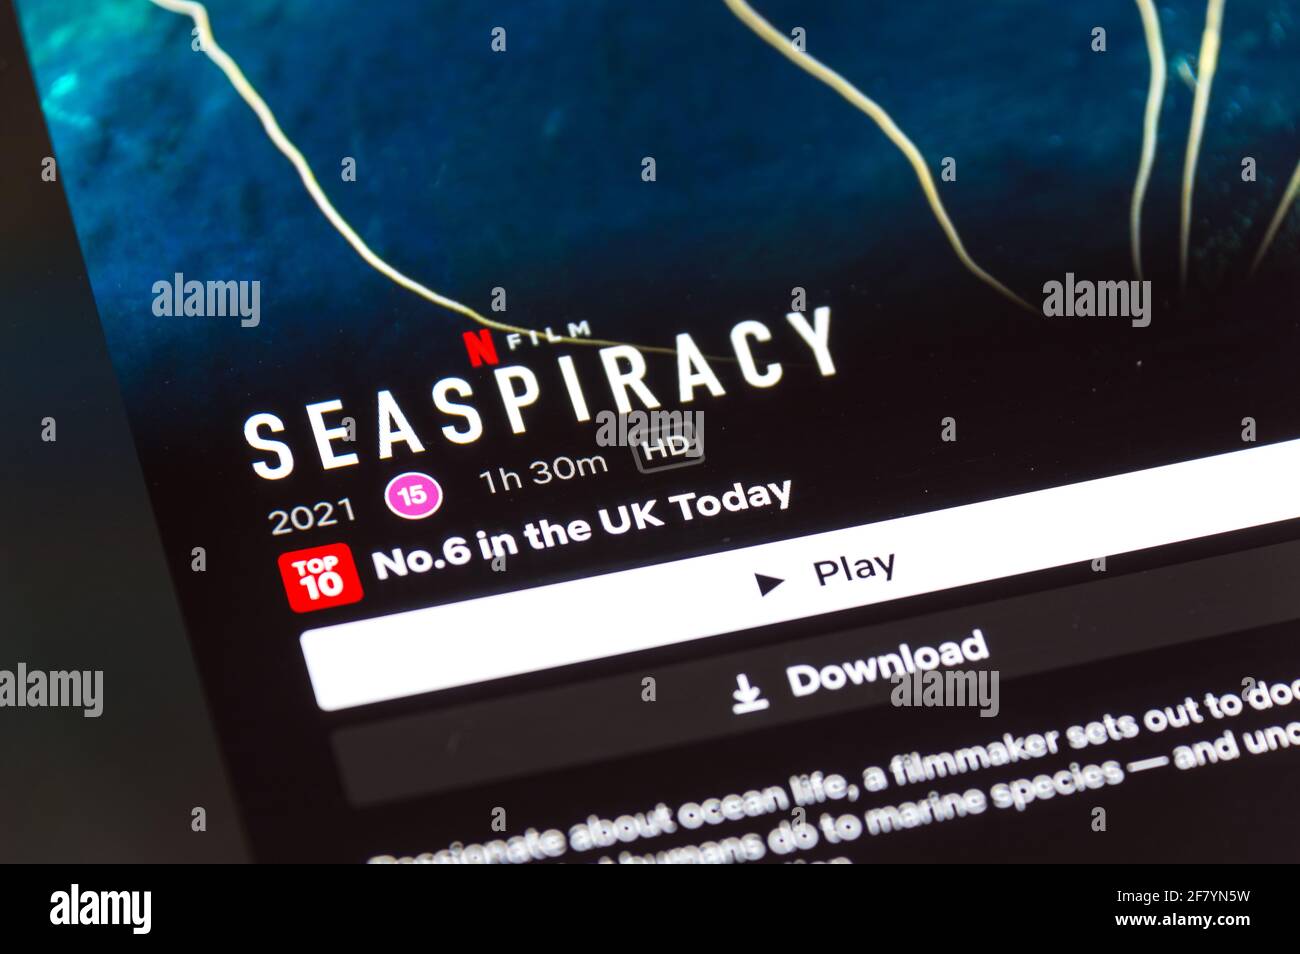 SeaPiracy eine umstrittene Dokumentation über den Videostreaming-Dienst Netflix Stockfoto